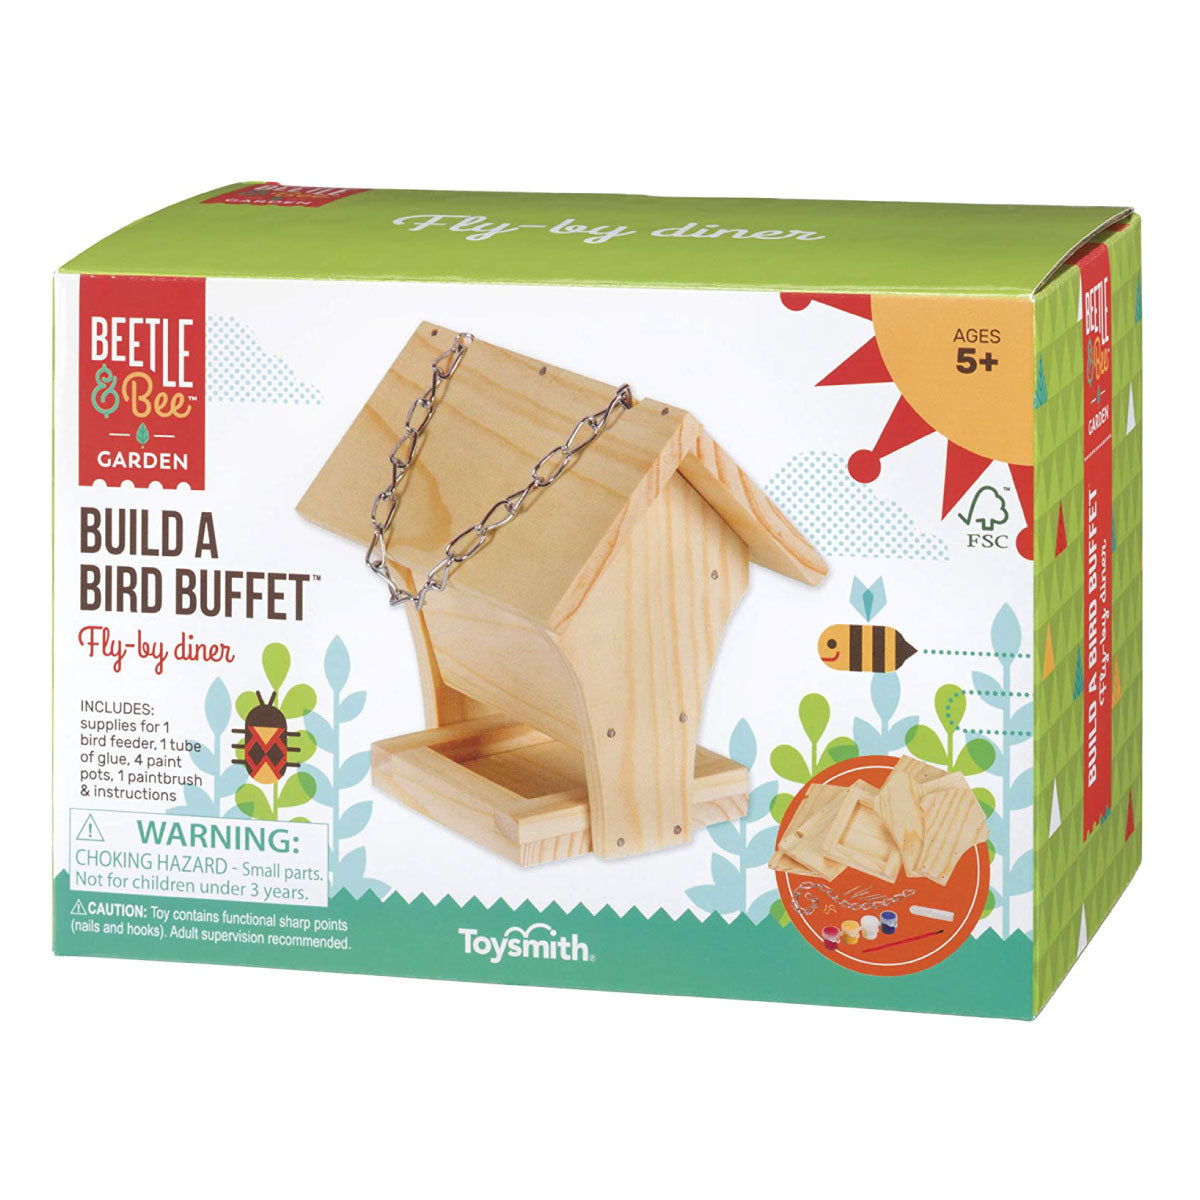 Beetle & Bee Build a Bird Buffet Kit